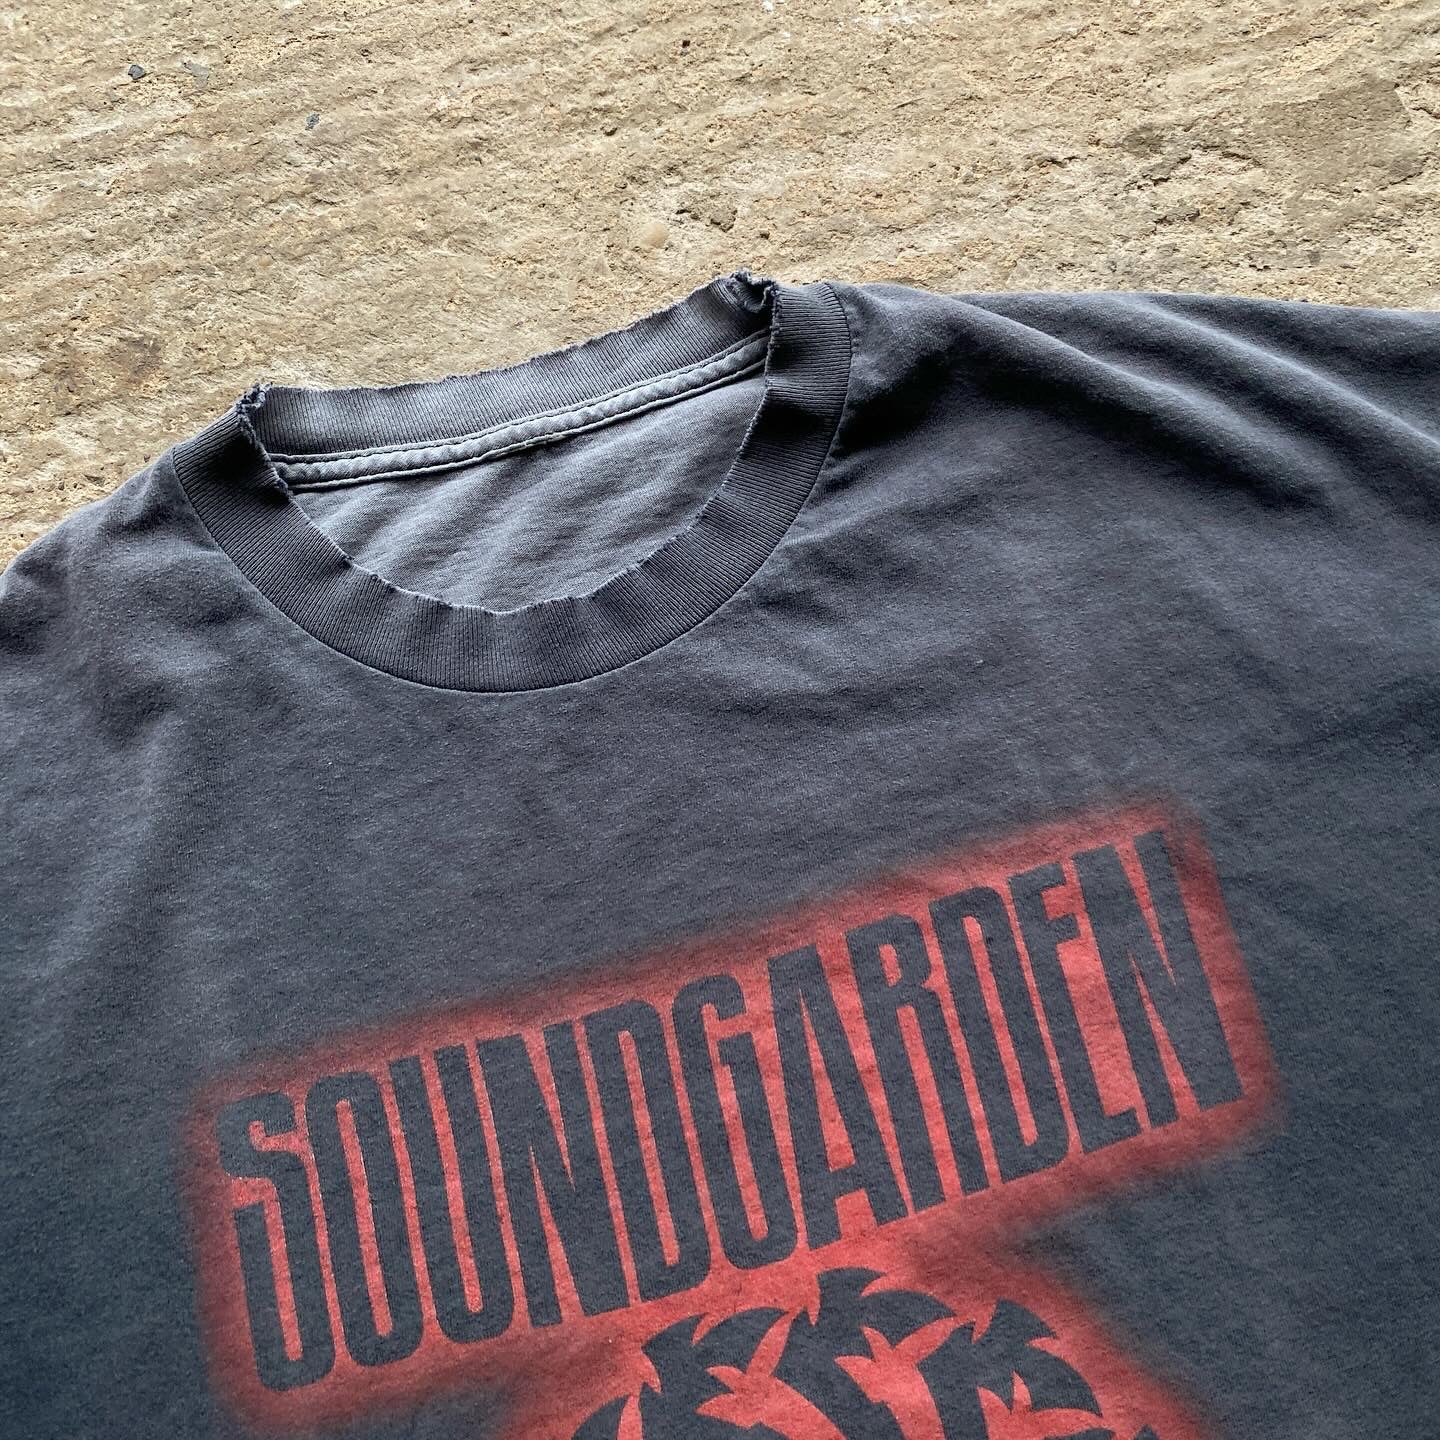 Soundgarden - 'Tour' - 2011 - XXL